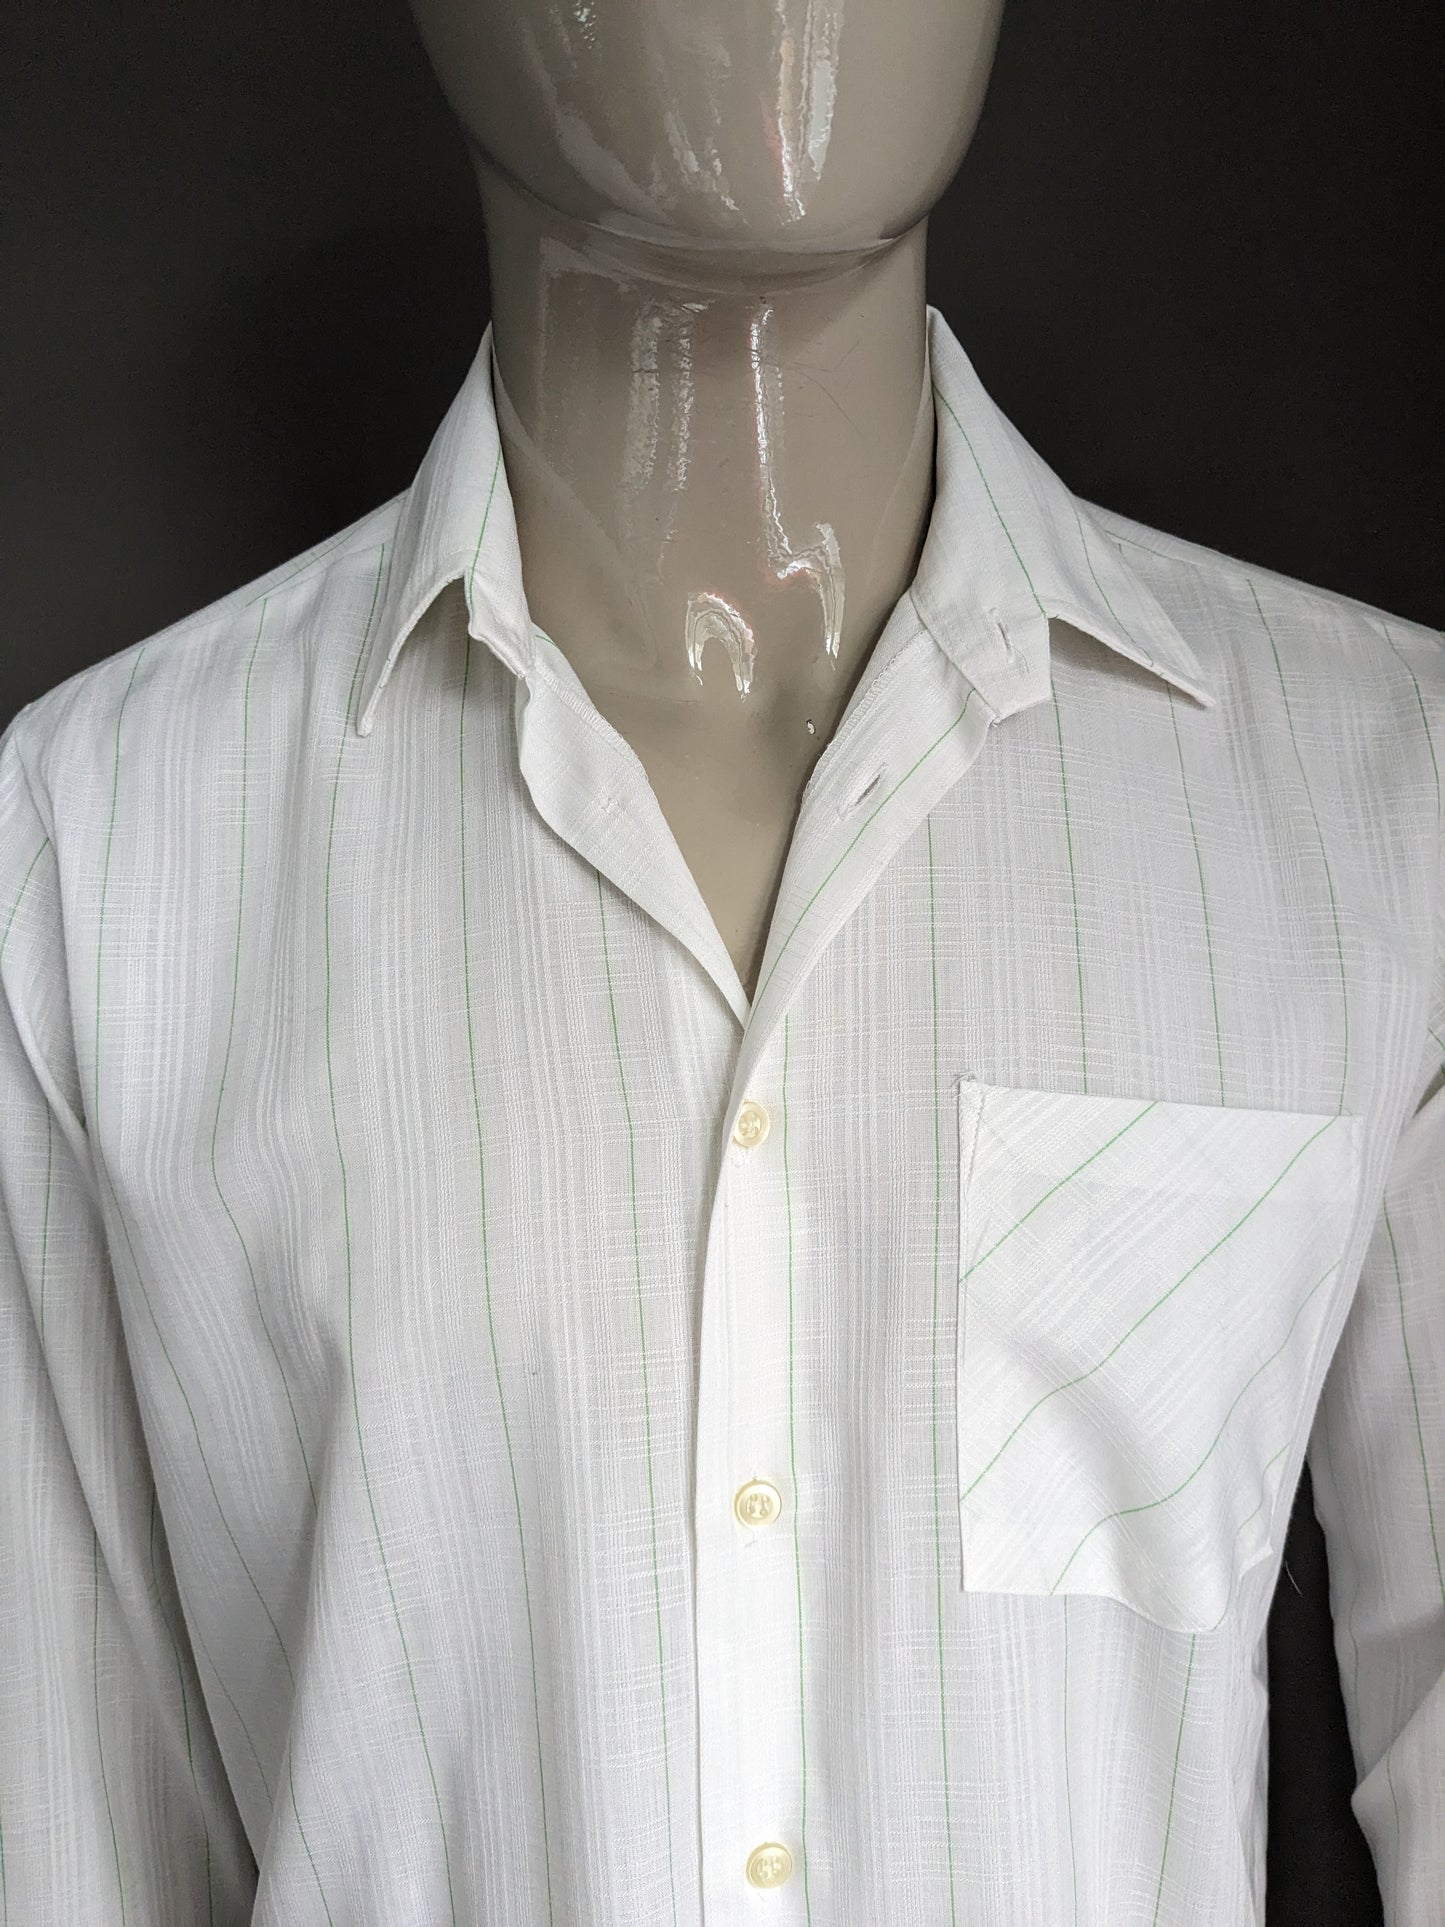 Camisa Vintage Labod 70. Verde blanco revisado. Tamaño xl.